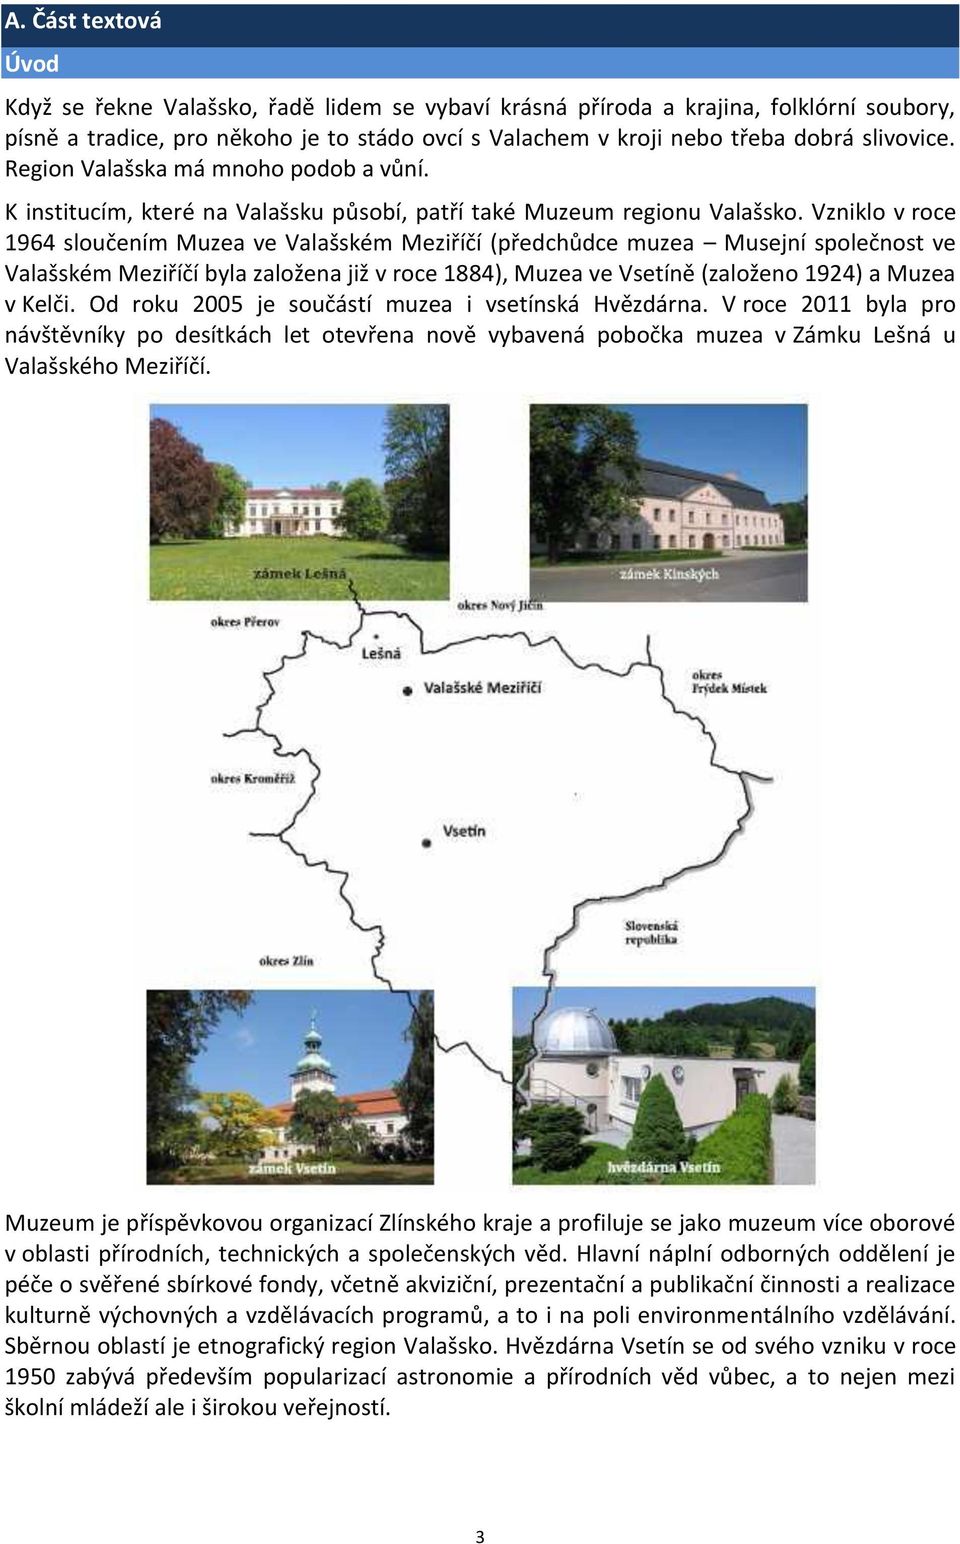 Vzniklo v roce 1964 sloučením Muzea ve Valašském Meziříčí (předchůdce muzea Musejní společnost ve Valašském Meziříčí byla založena již v roce 1884), Muzea ve Vsetíně (založeno 1924) a Muzea v Kelči.